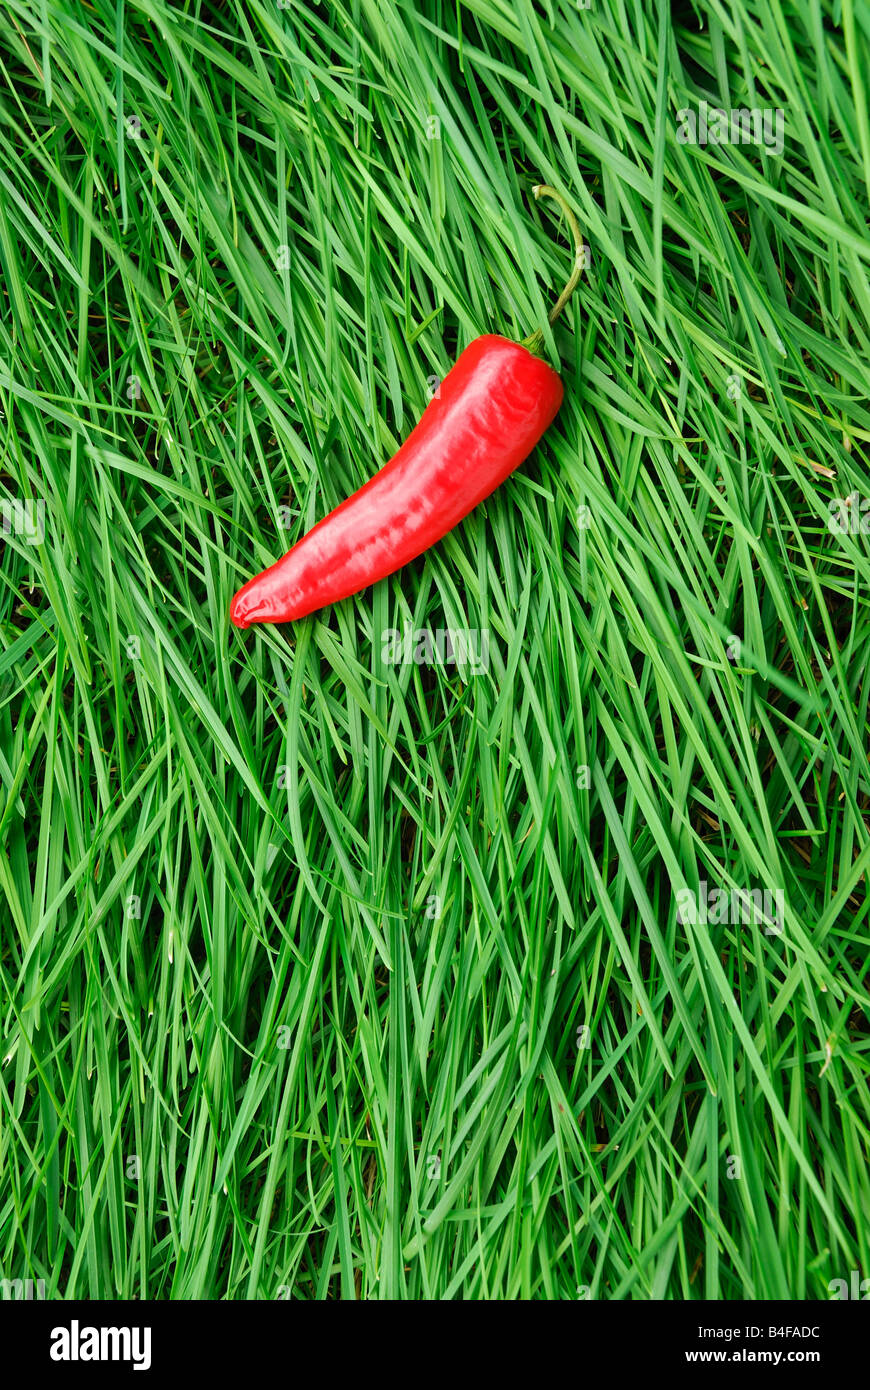 Peperone rosso su erba verde Foto Stock